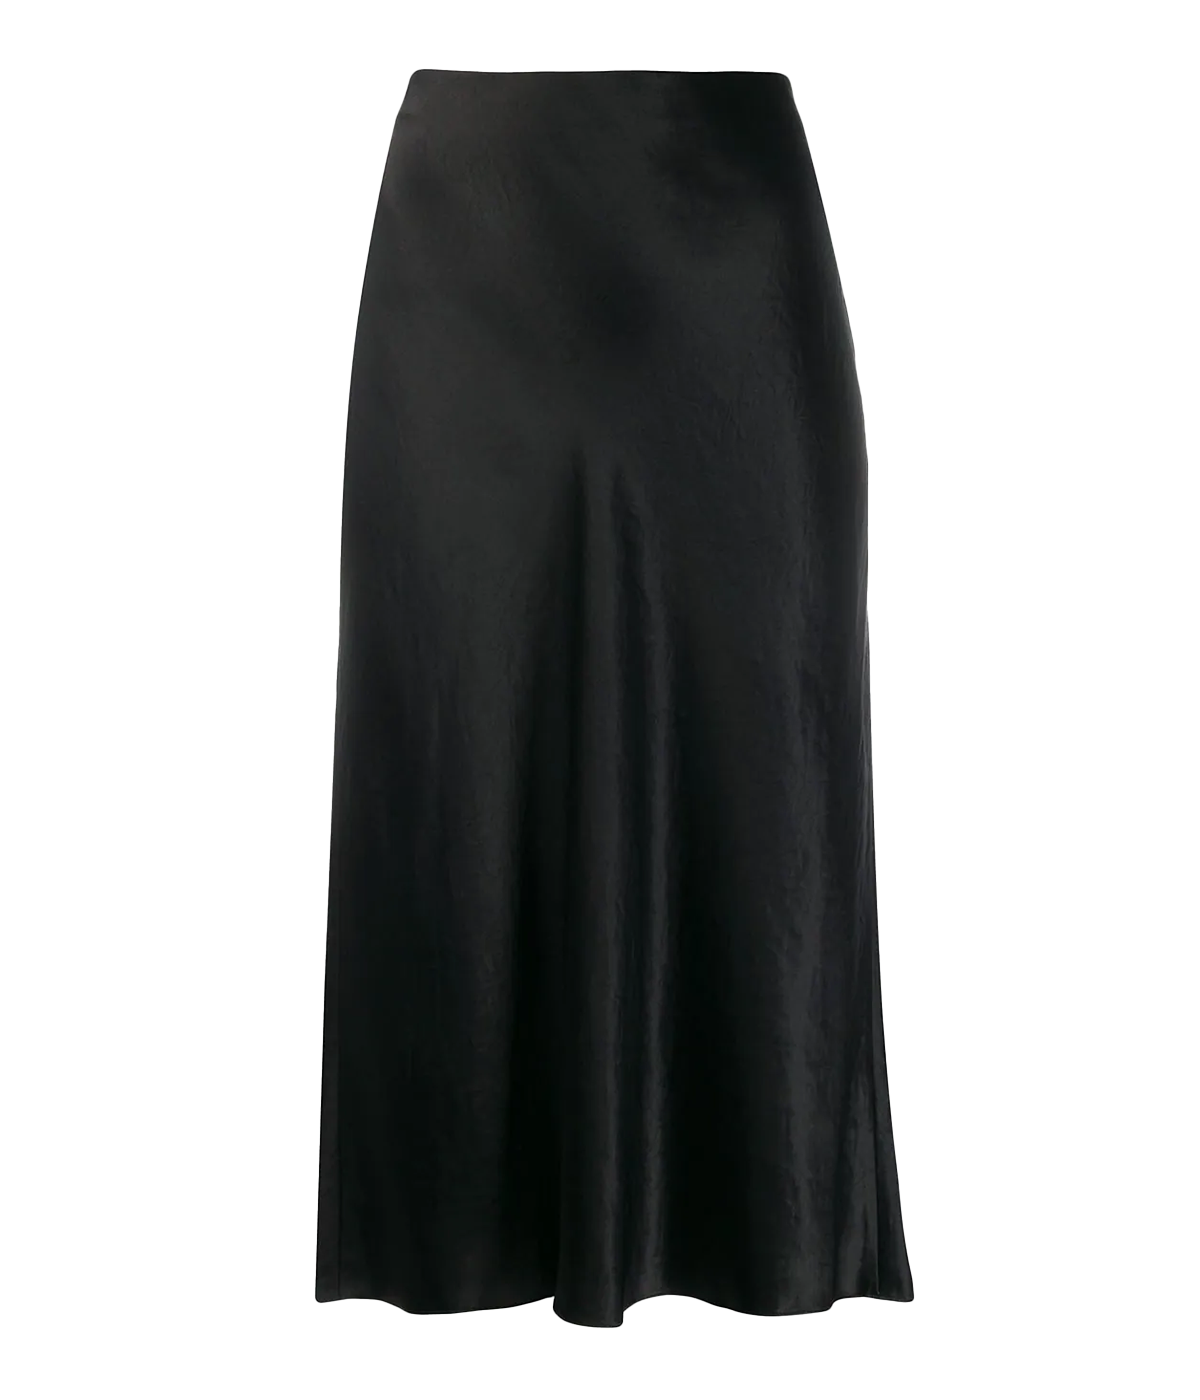 Slip Skirt in Black